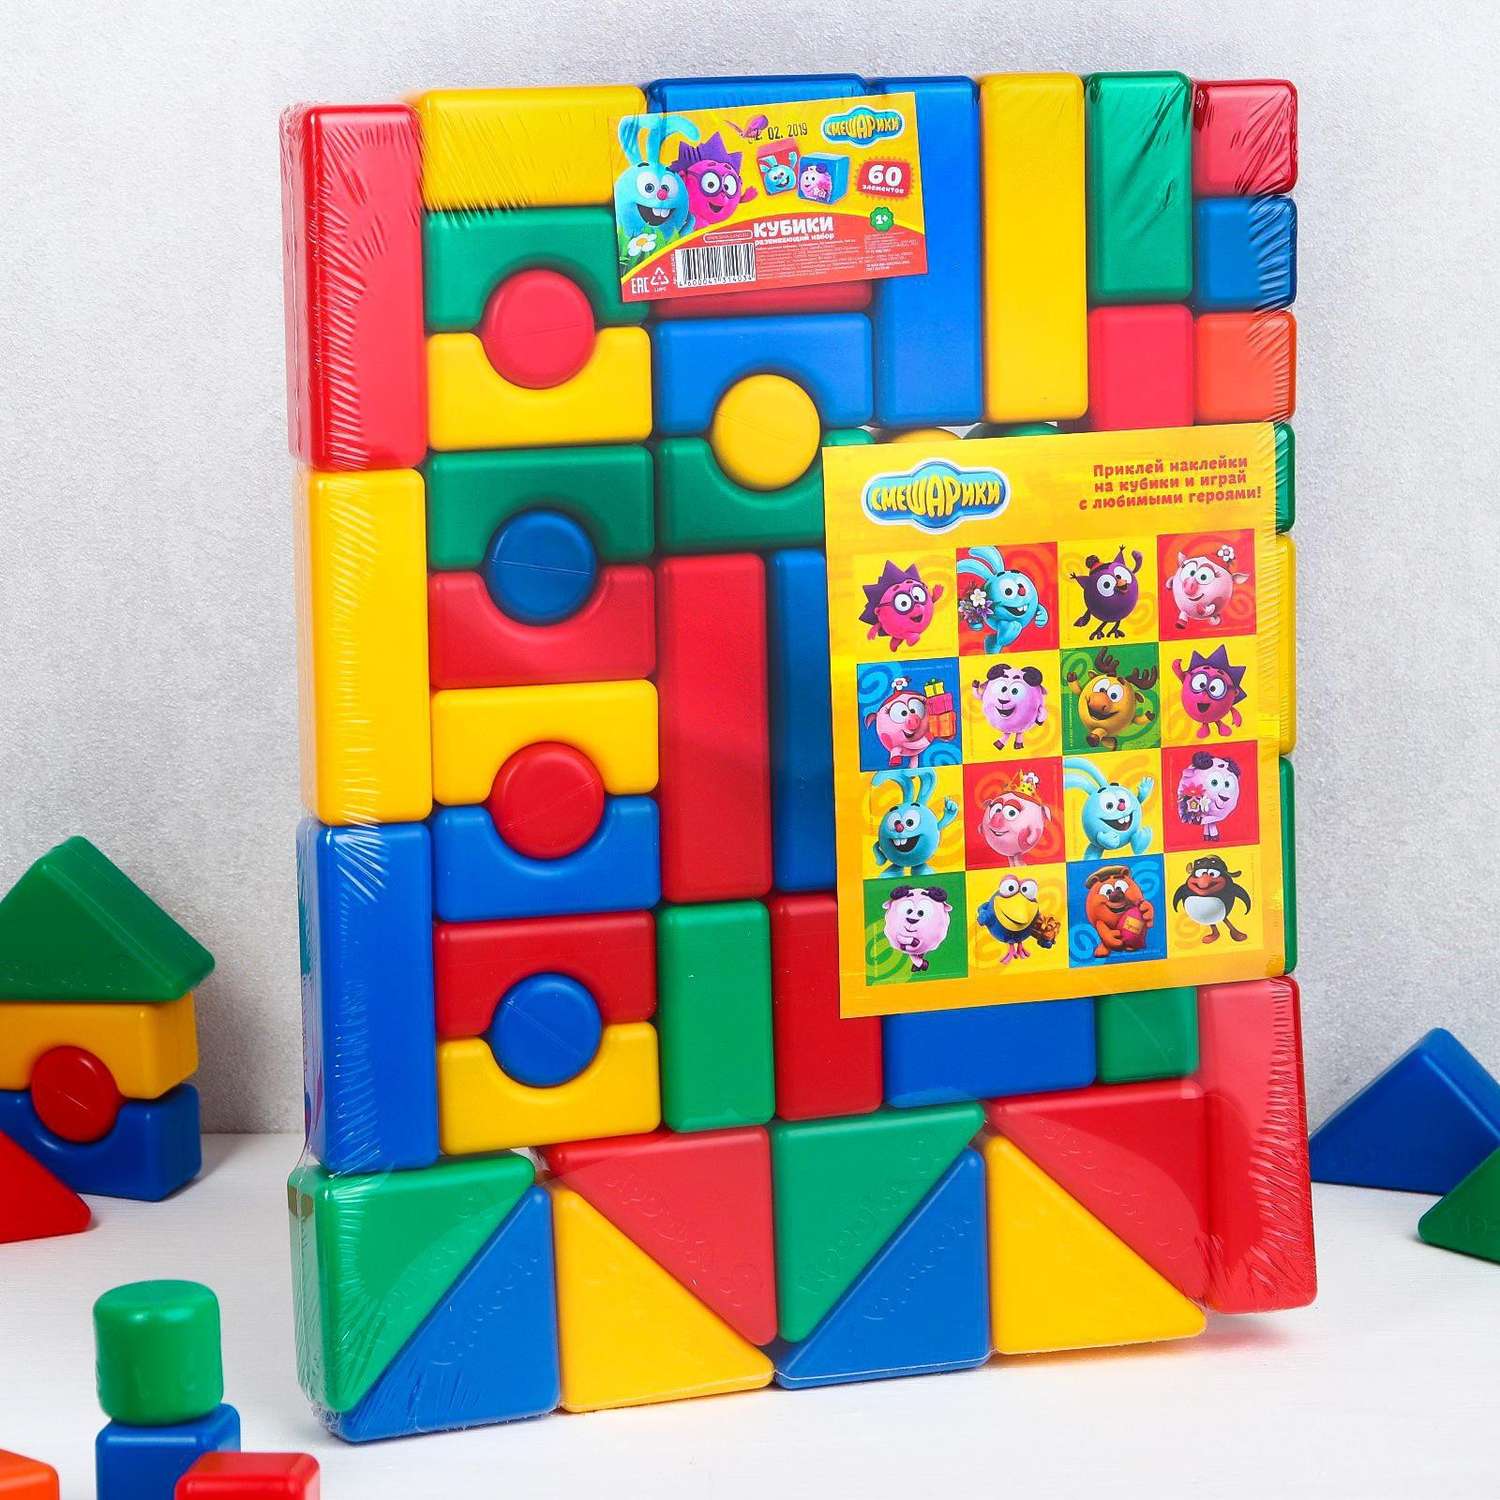 Набор кубиков Соломон Цветных «Смешарики». 60 элементов. кубик 4 х 4 см - фото 1